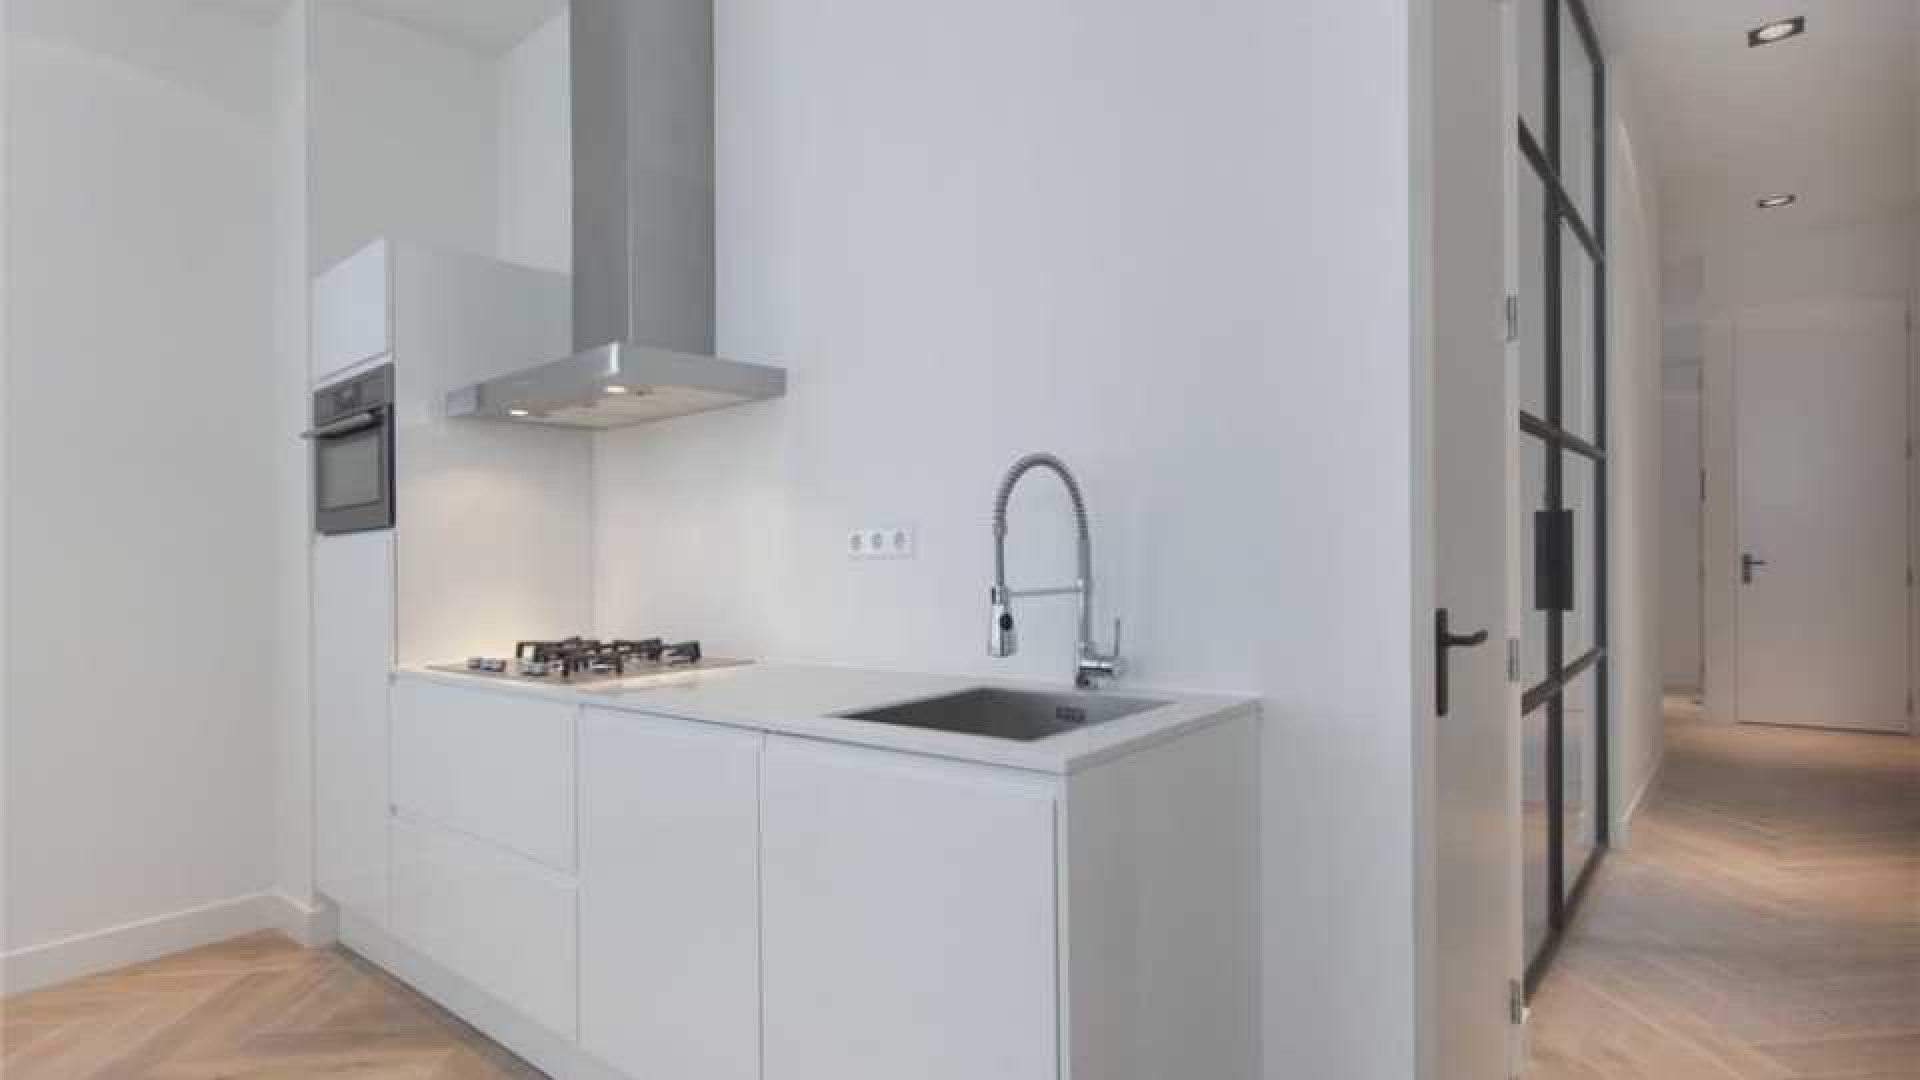 Khalid Boulahrouz koopt luxe appartement in centrum van Amsterdam. Zie foto's